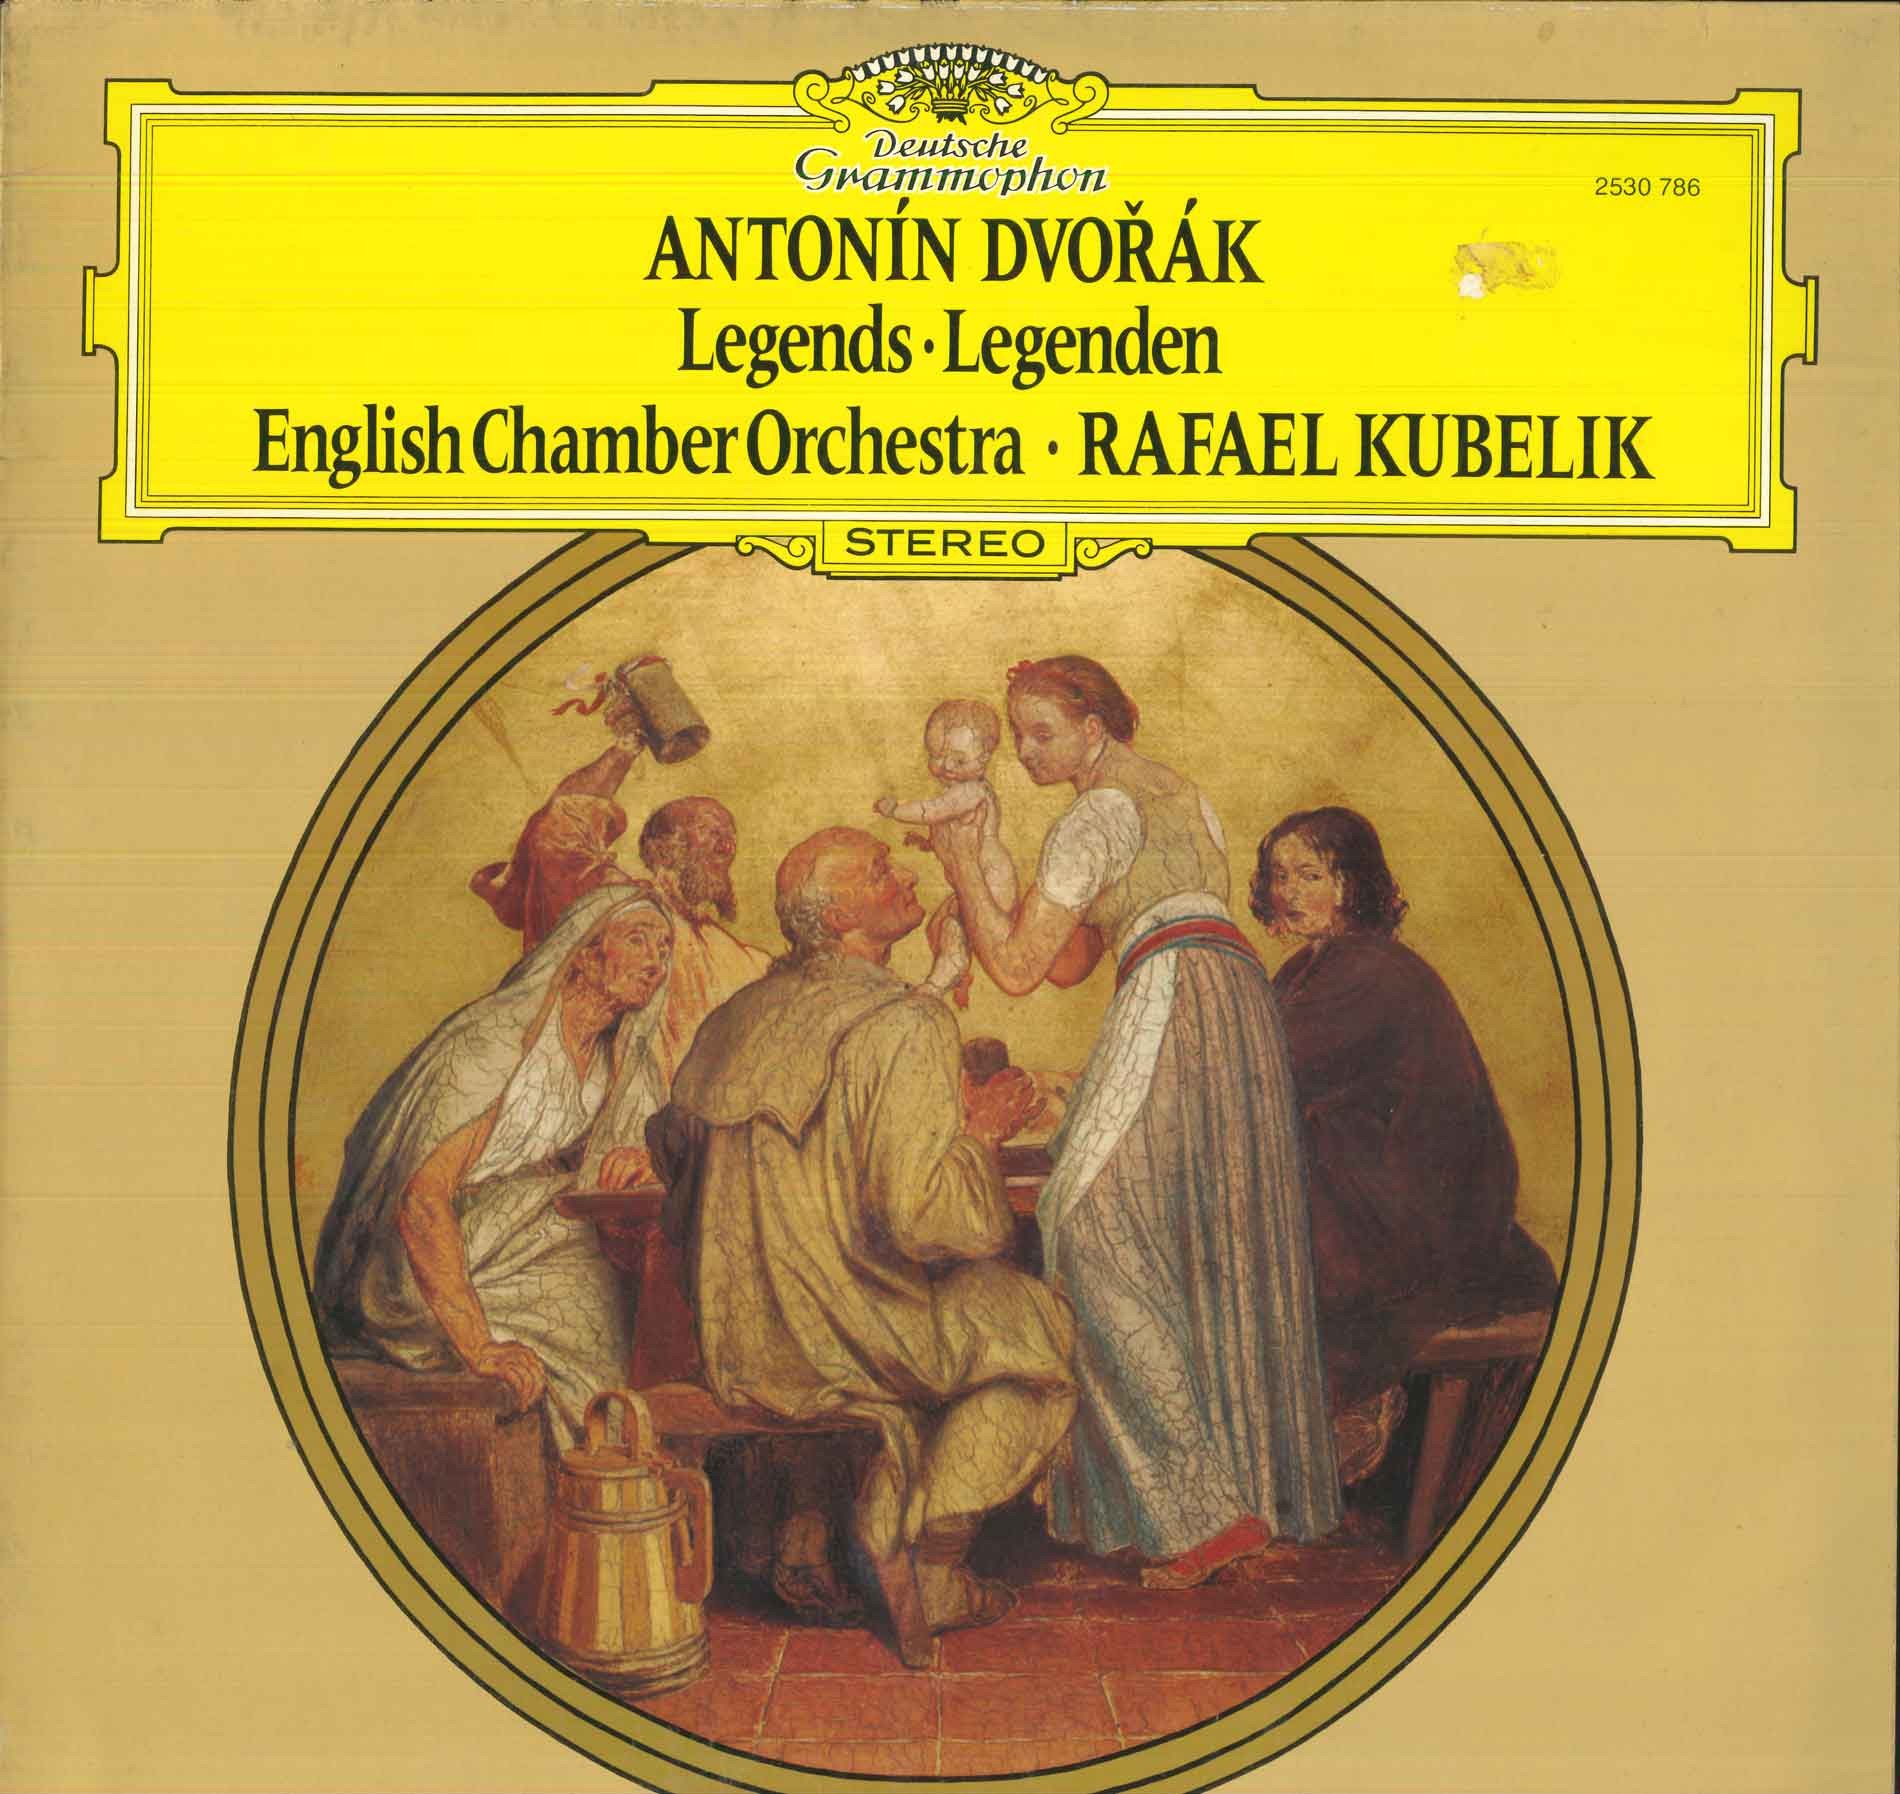 Diffusori - Cosa stiamo ascoltando in questo momento - Pagina 37 Dvorak-english-chamber-orchestra-kubelik-lp-vinile-legends-legenden-nuovo-dg